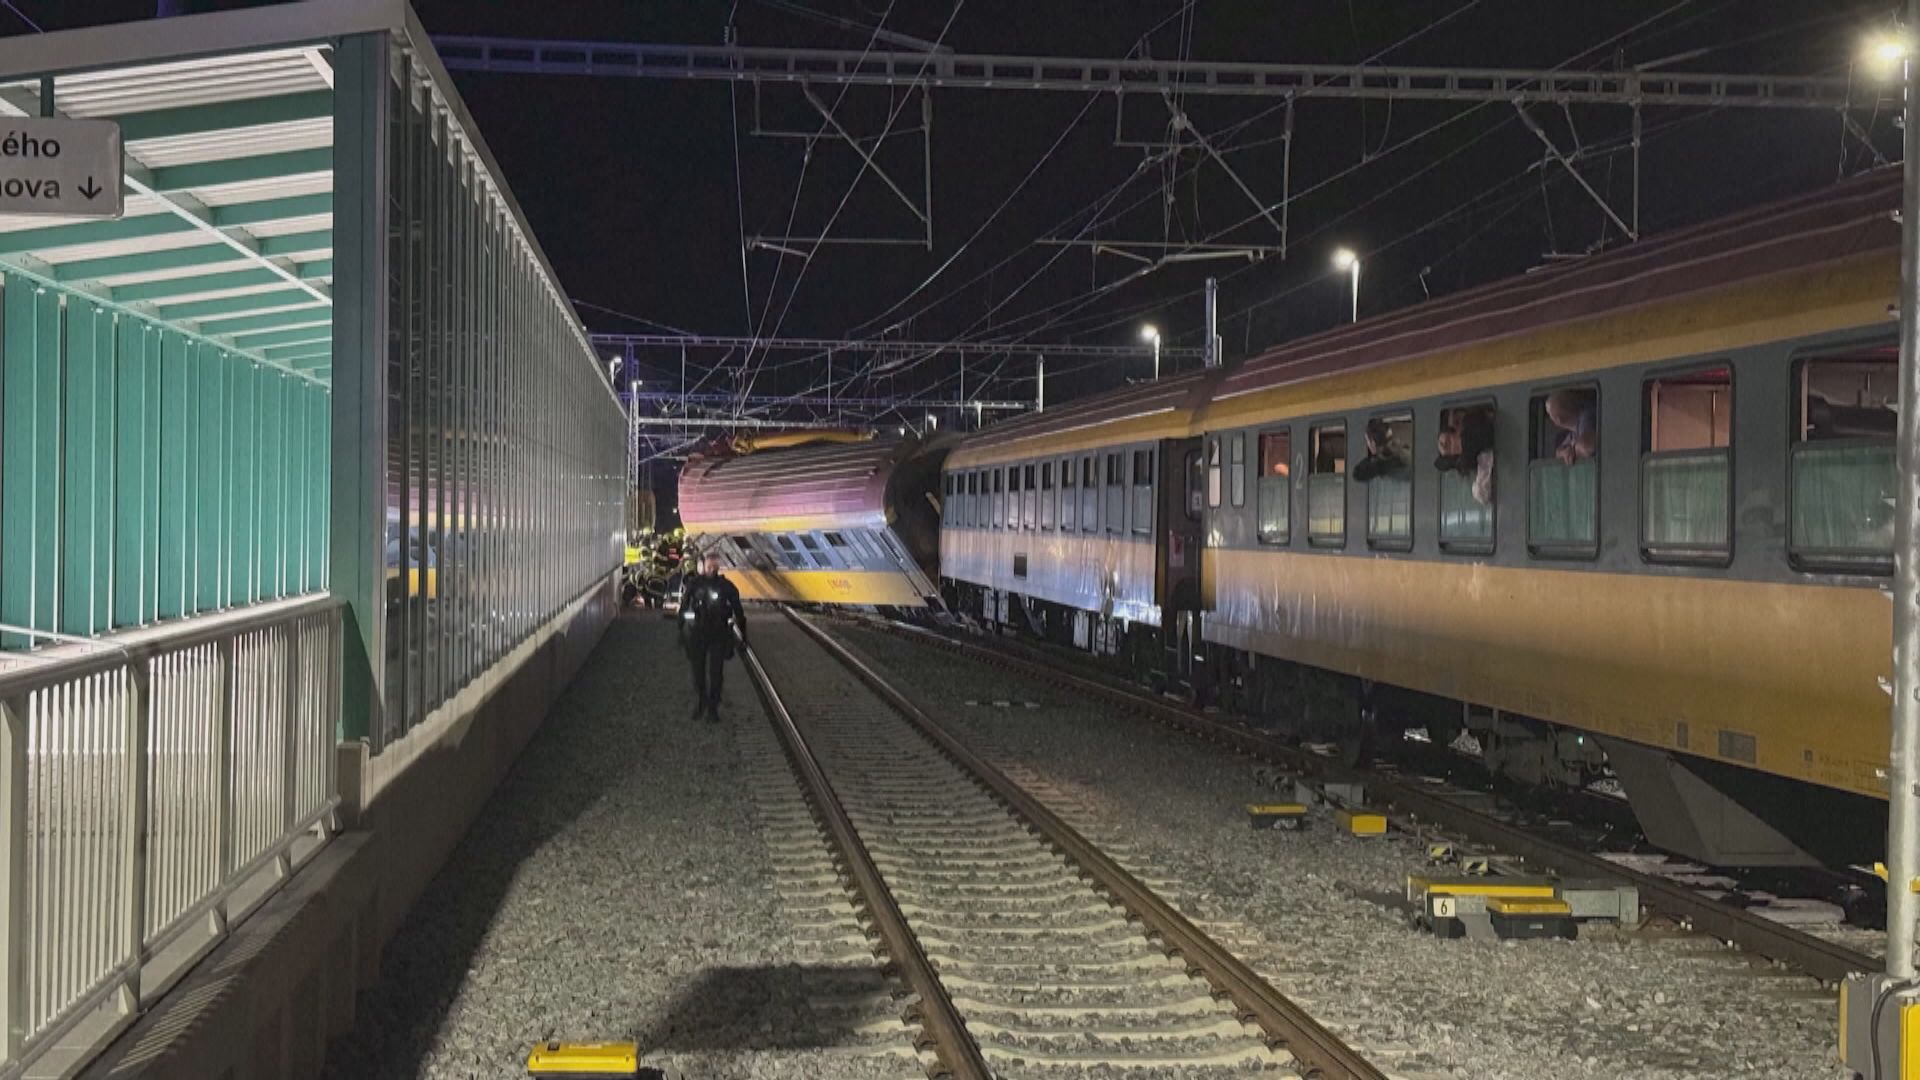 捷克發生火車相撞意外 至少4死逾20傷